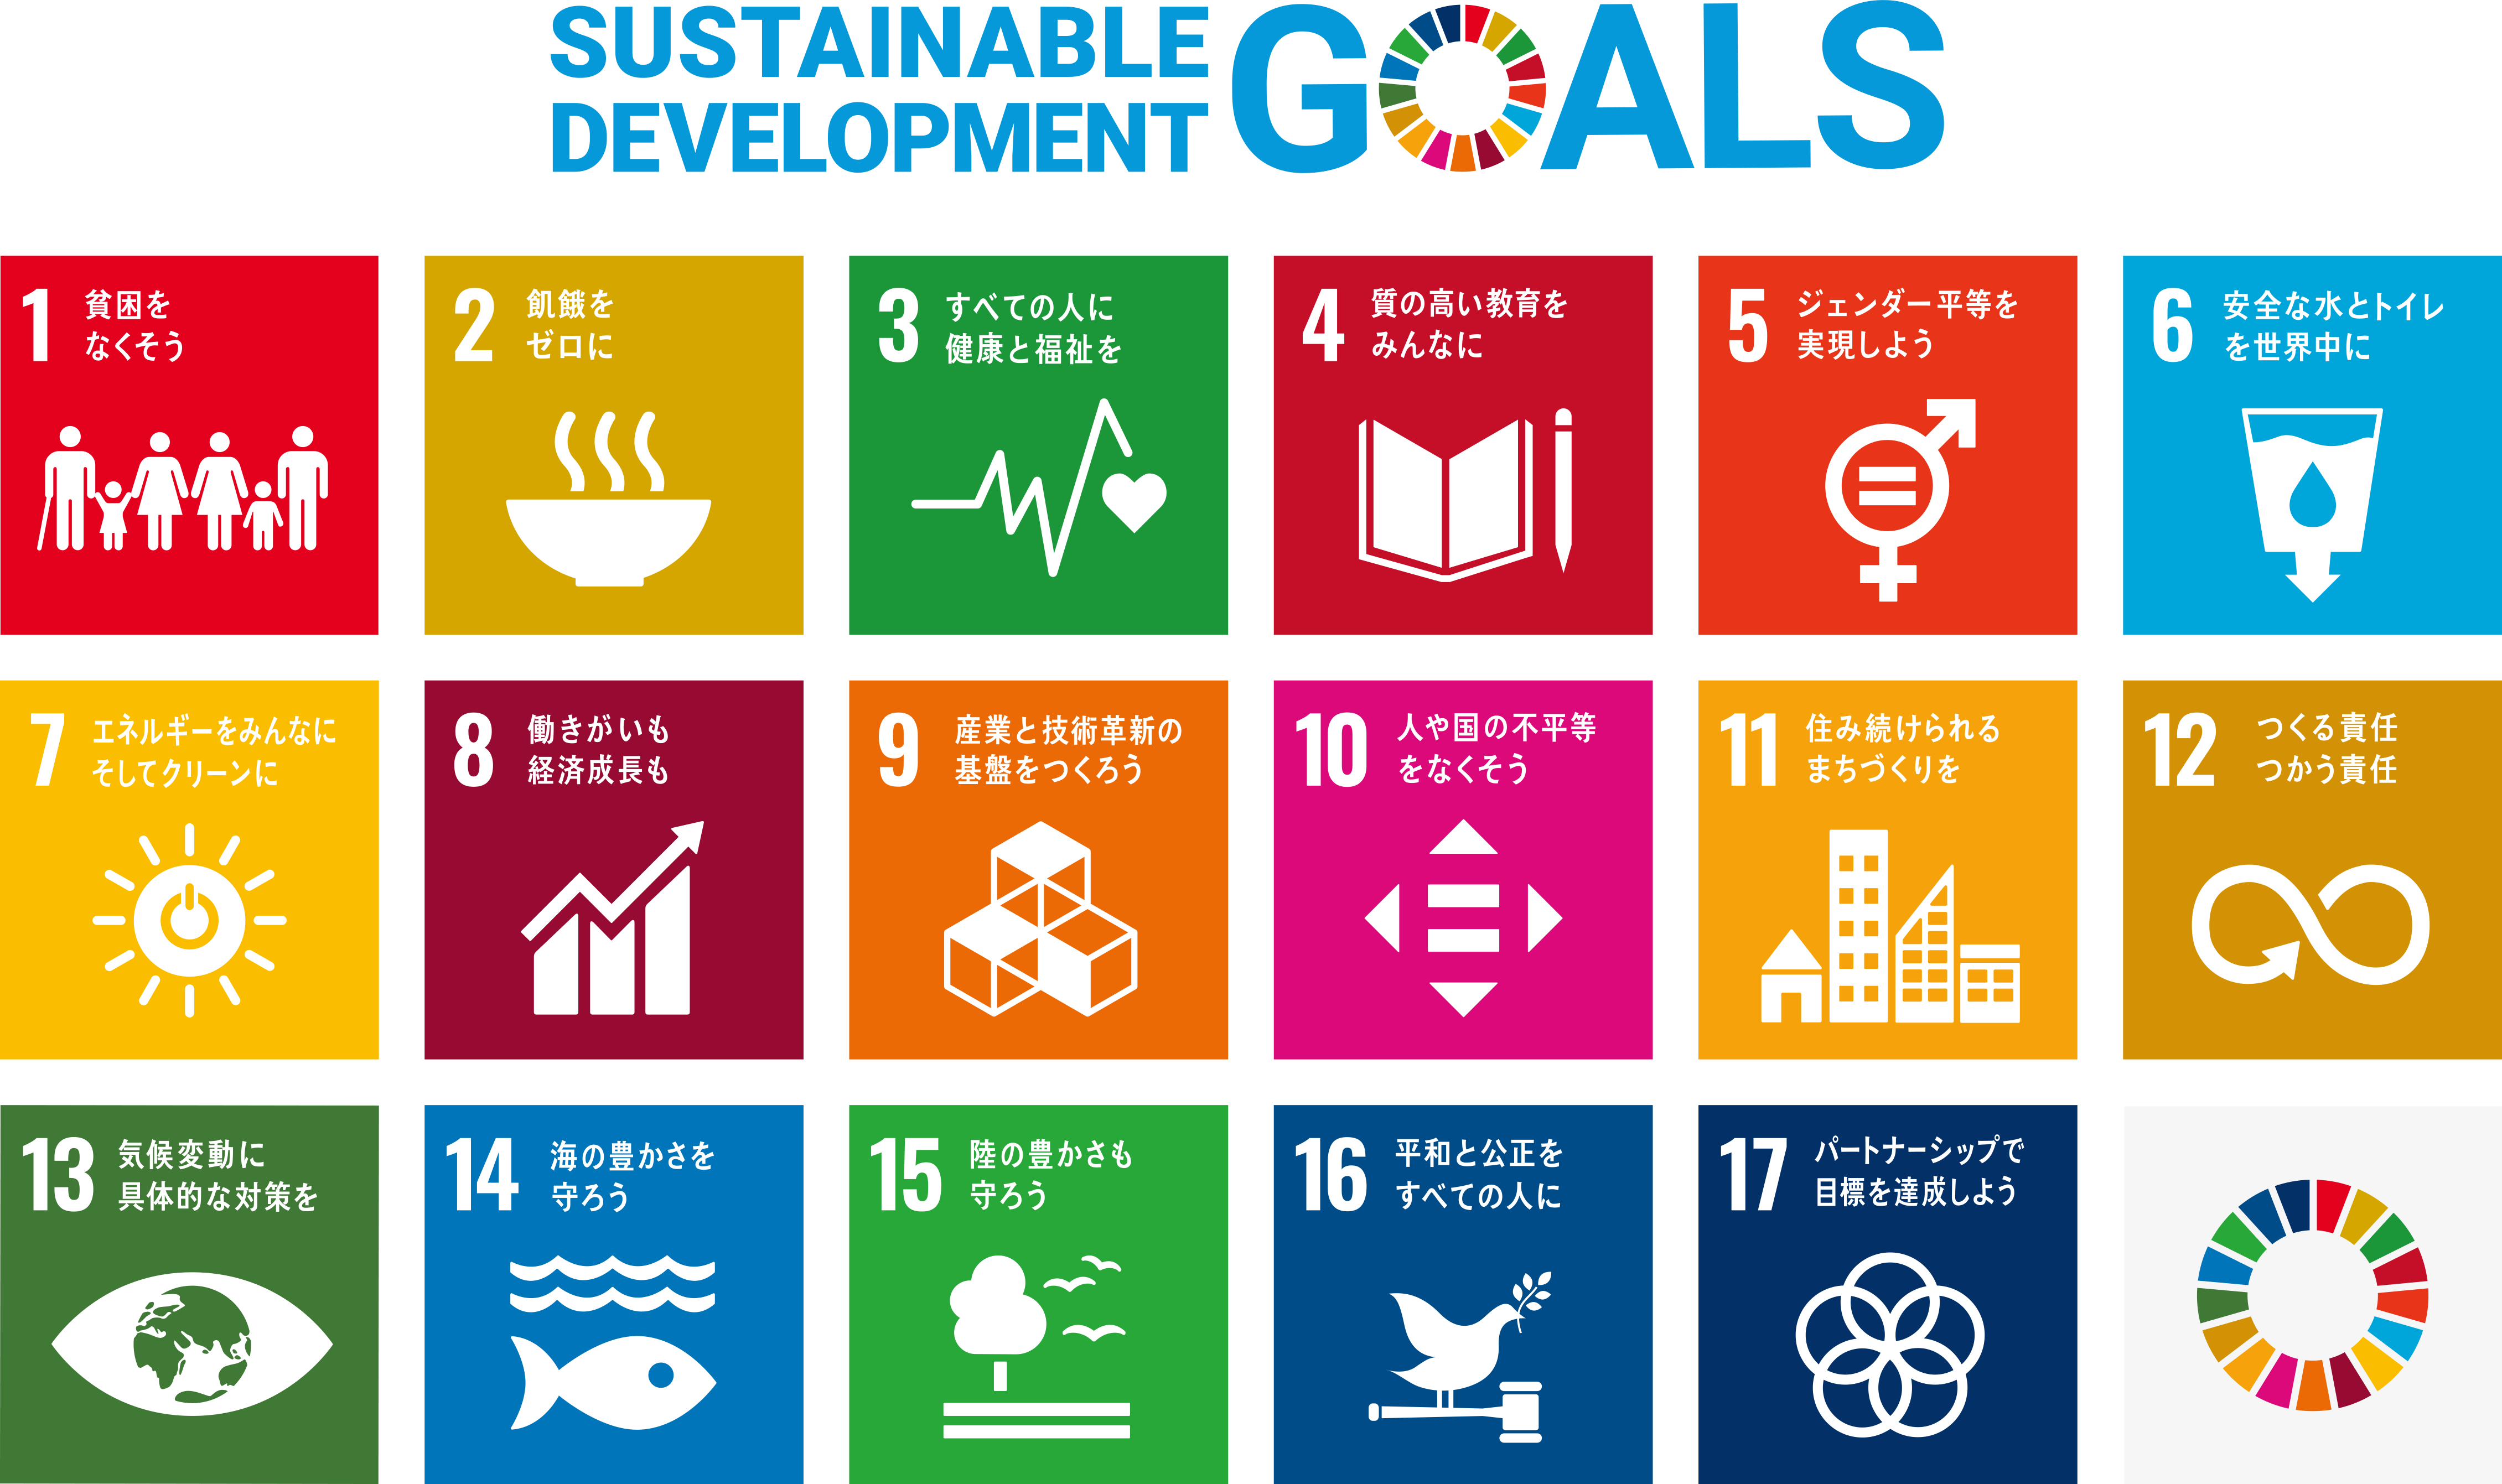 kumamoto for SDGs